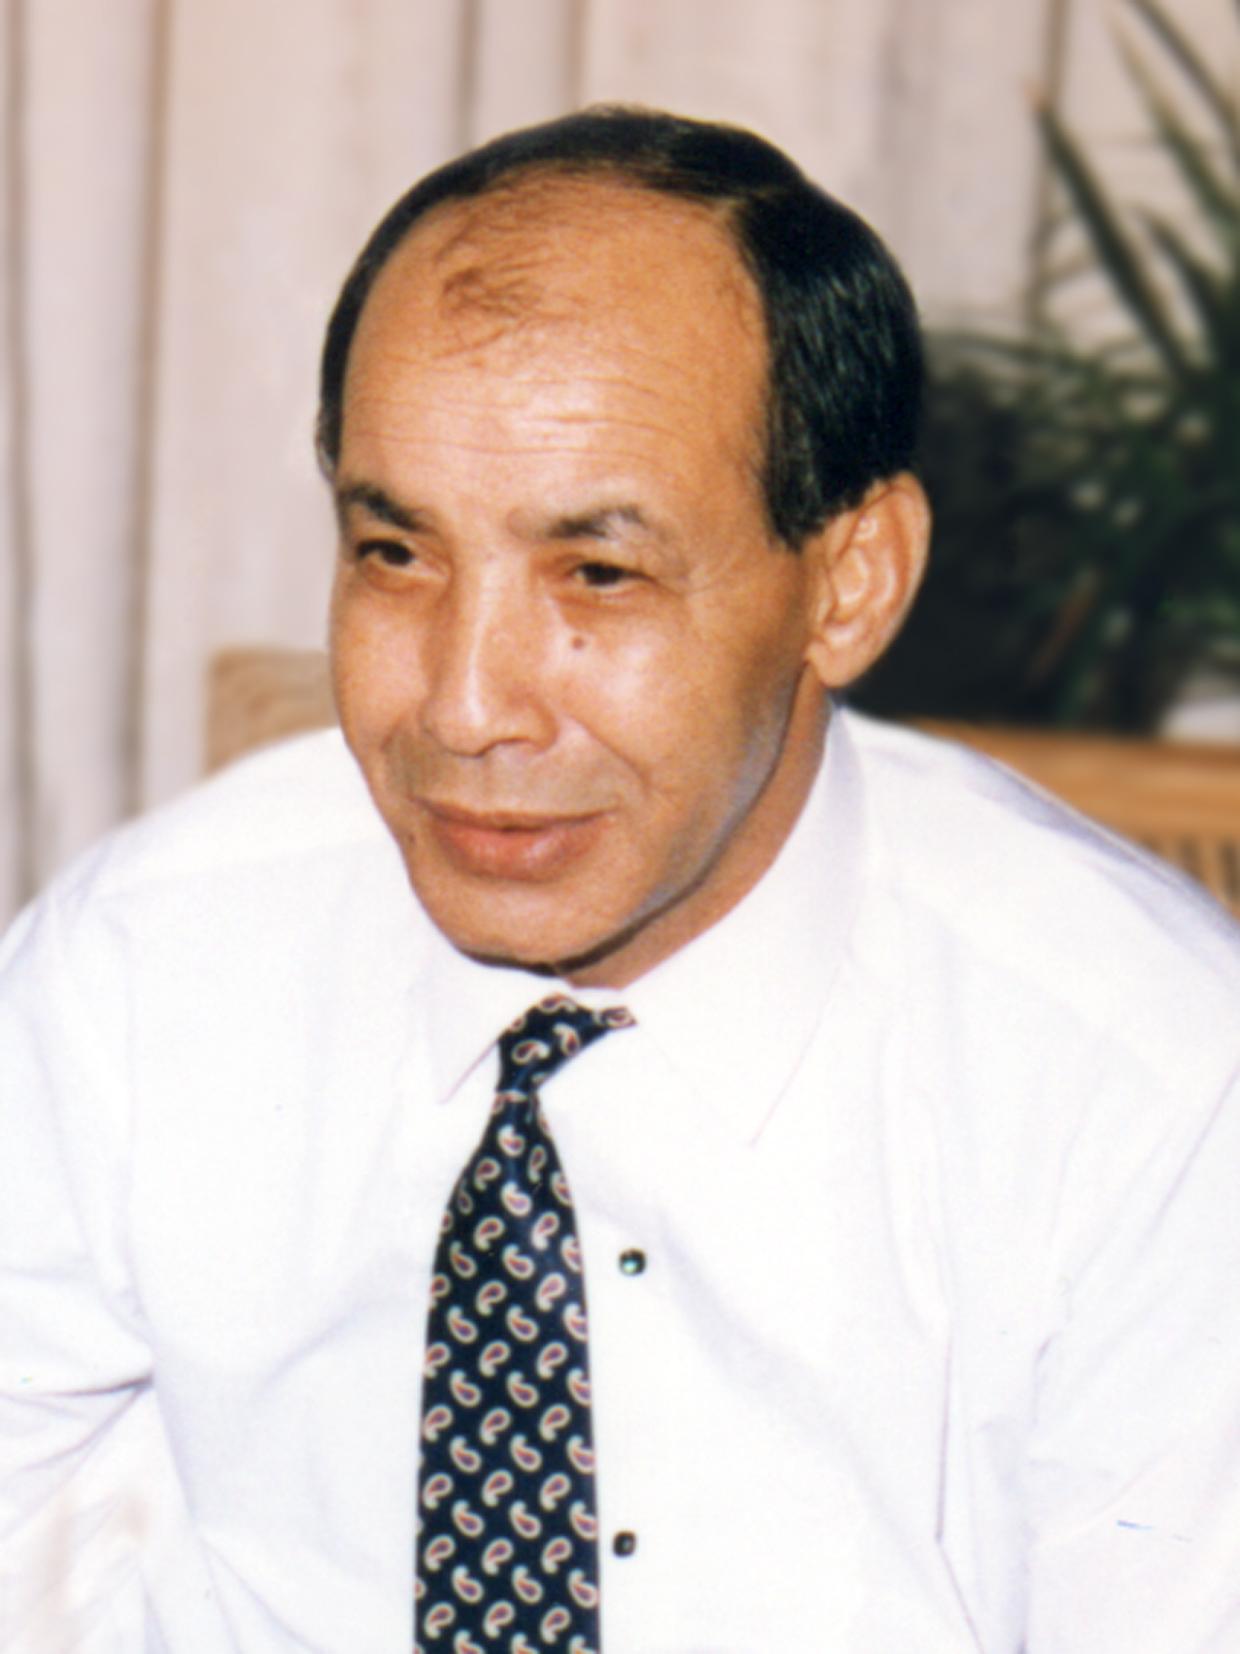 Mohamed Karfa